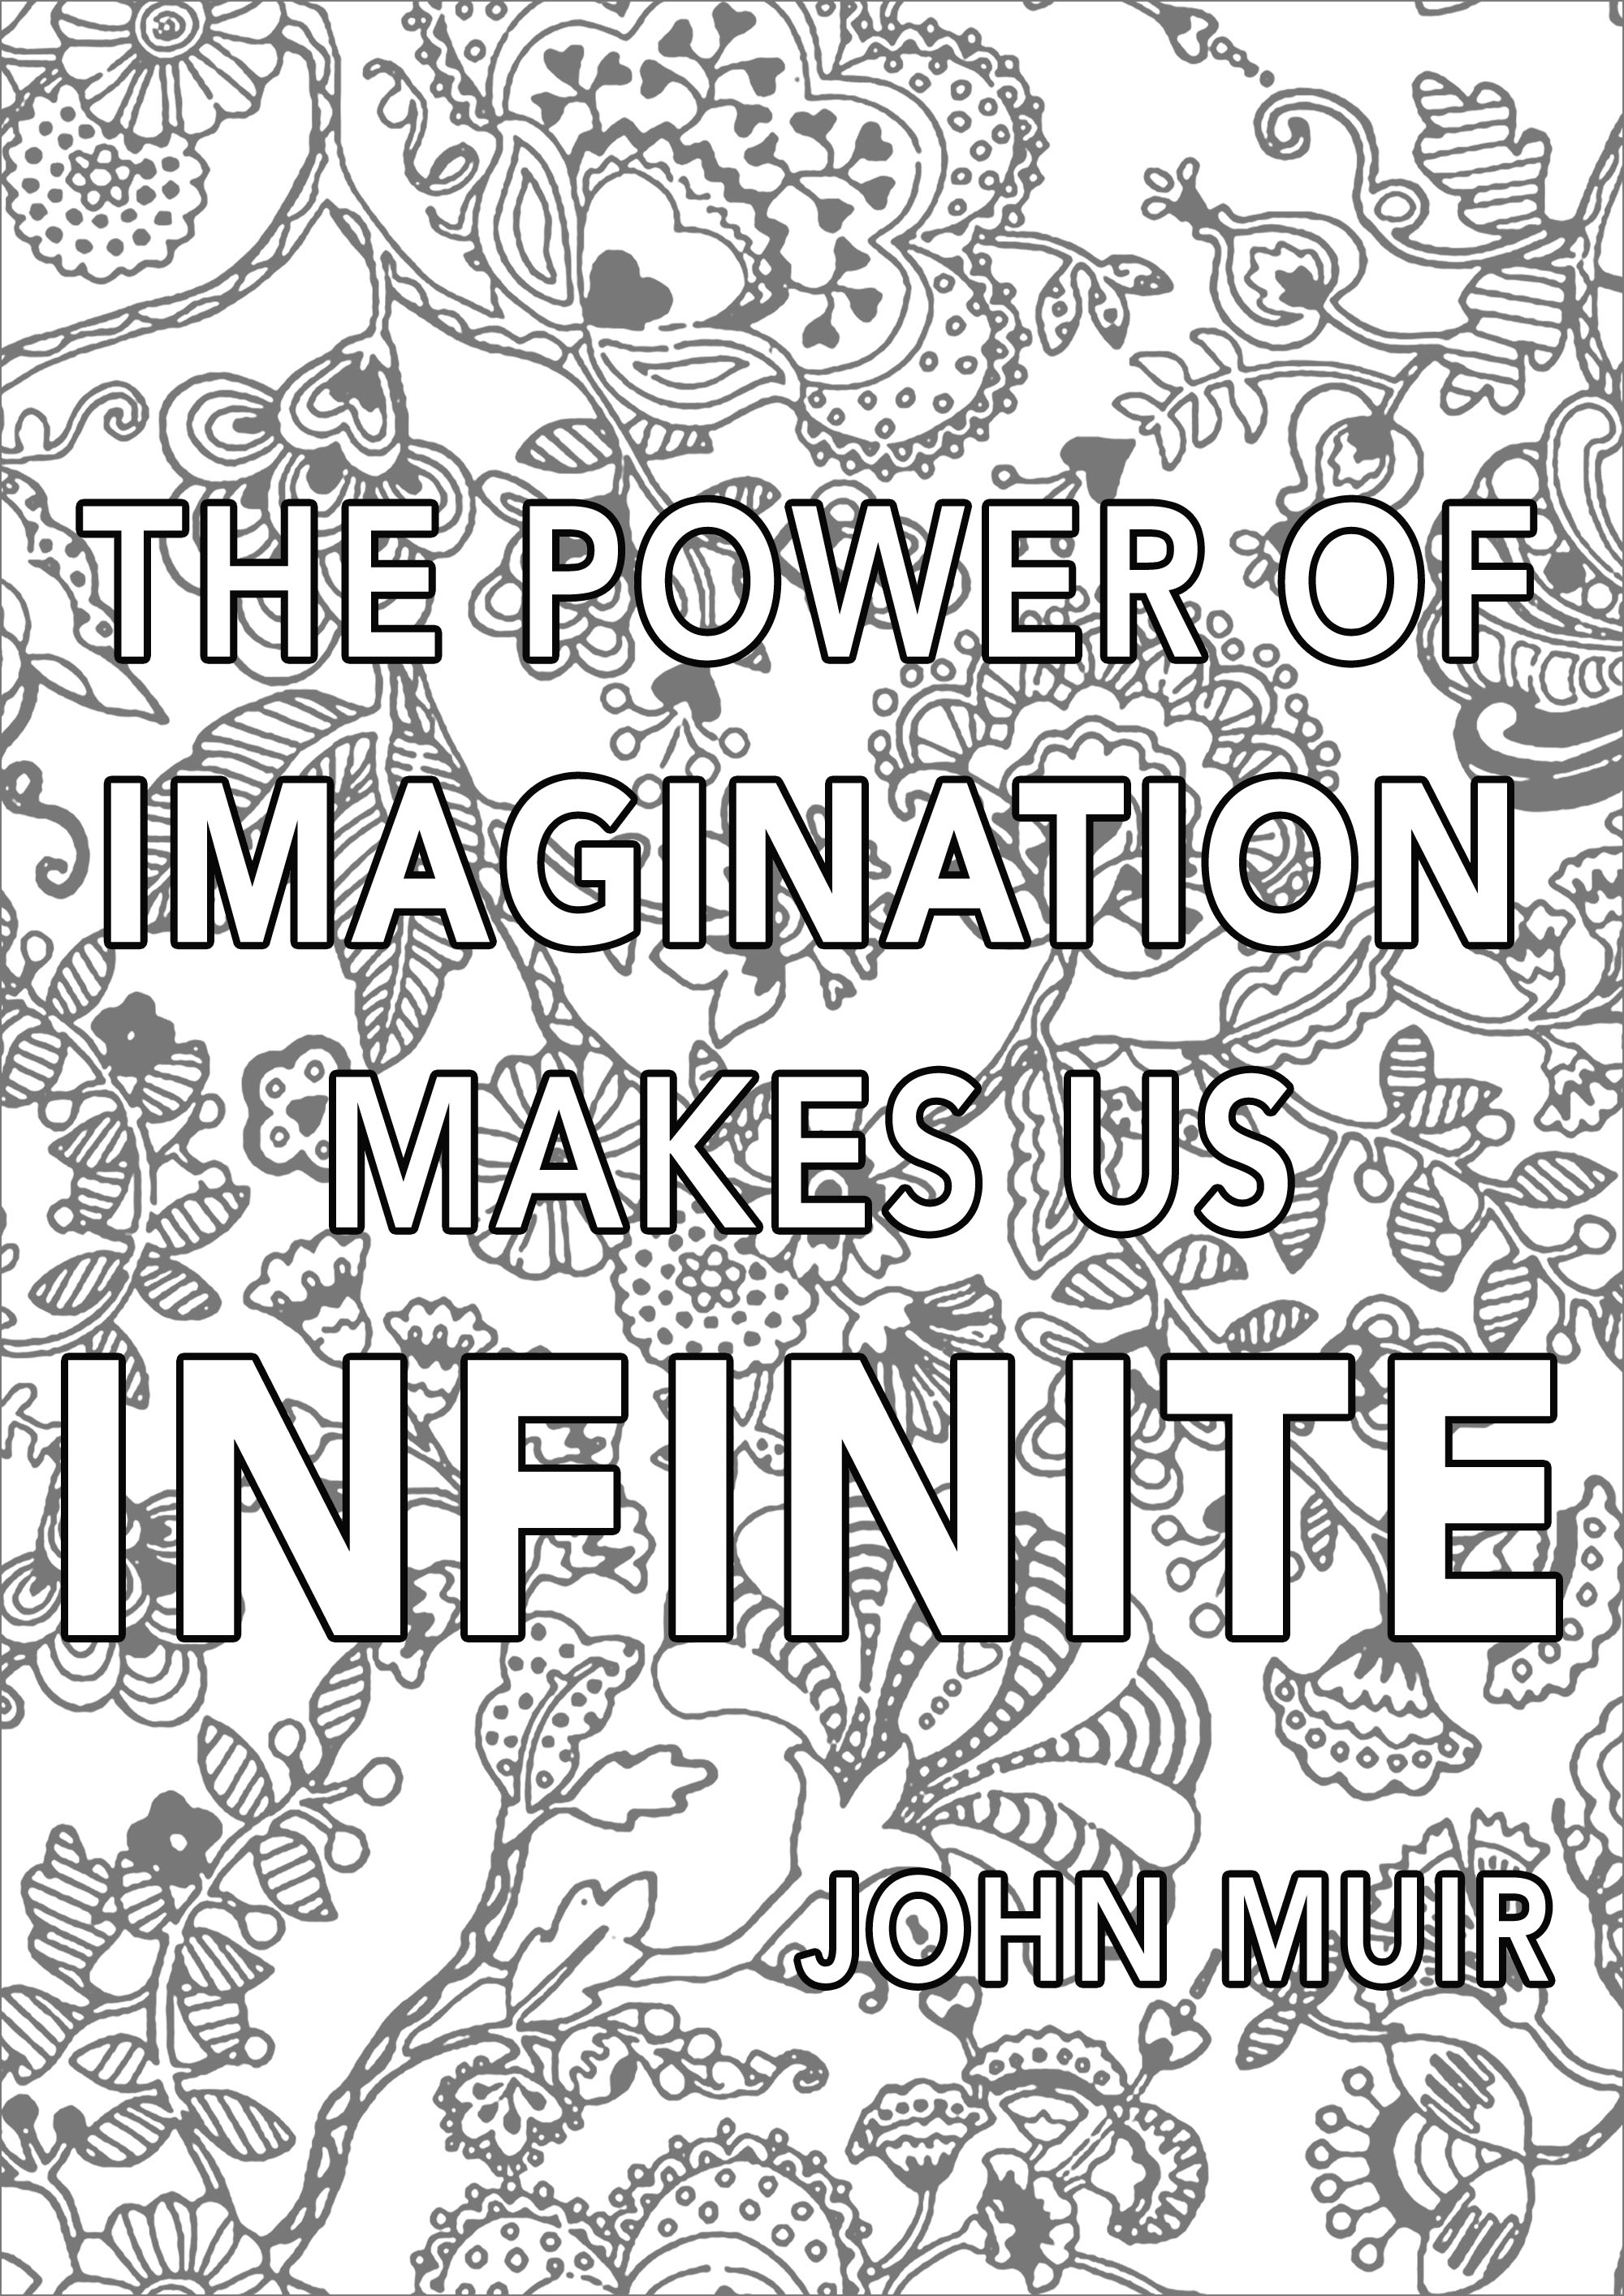 El poder de la imaginación nos hace infinitos, John Muir